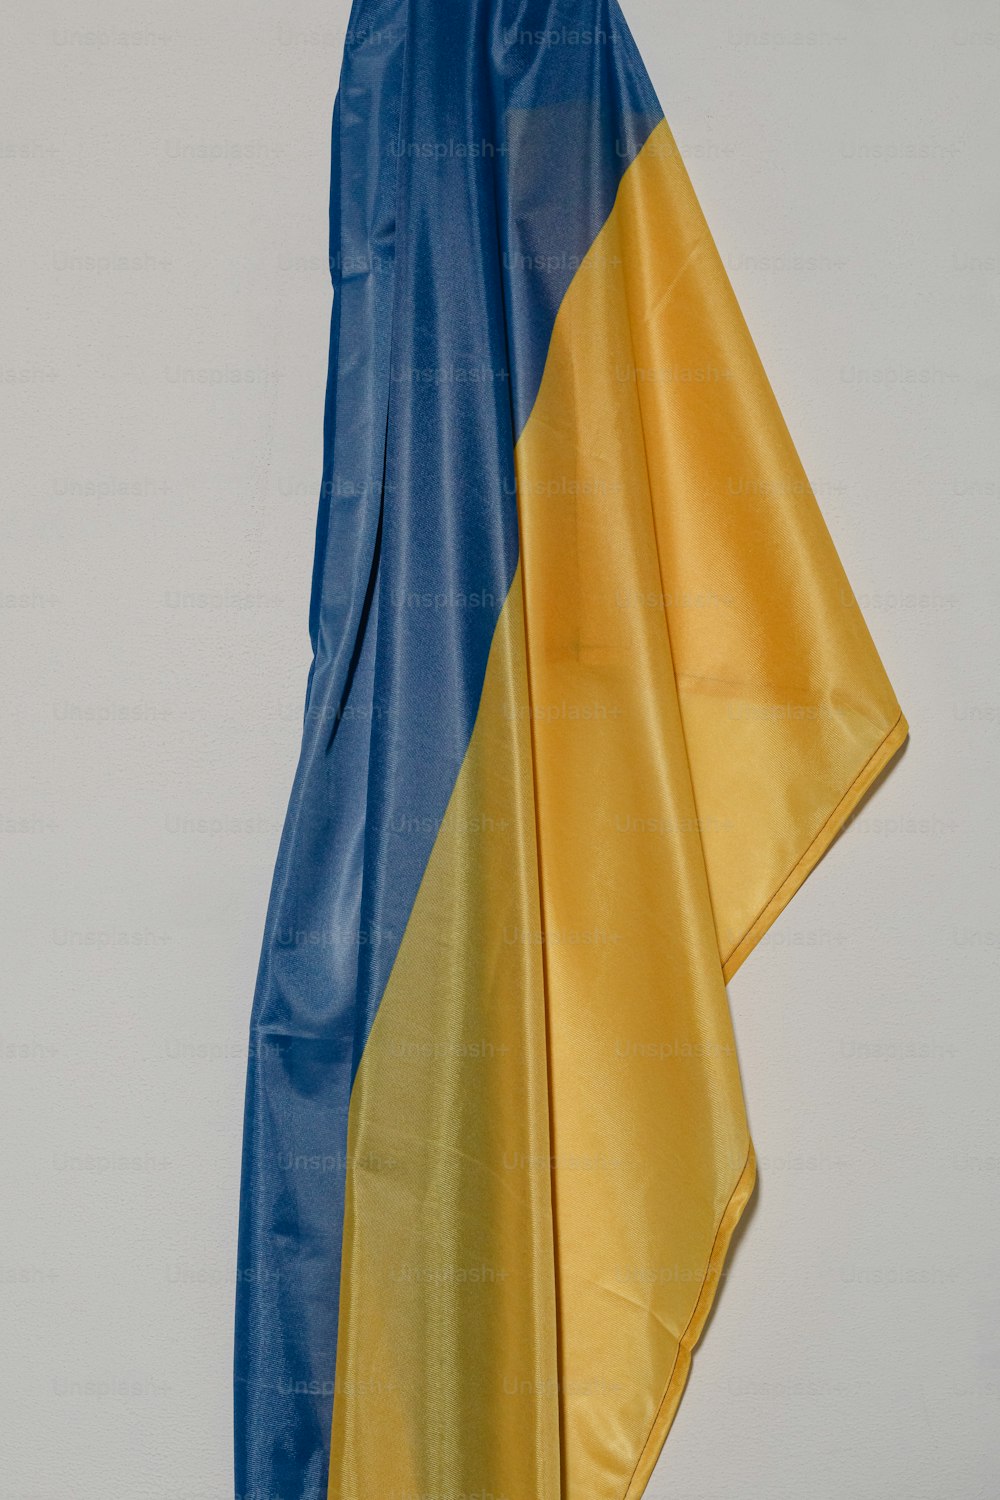 壁に掛かっている青と黄色の旗